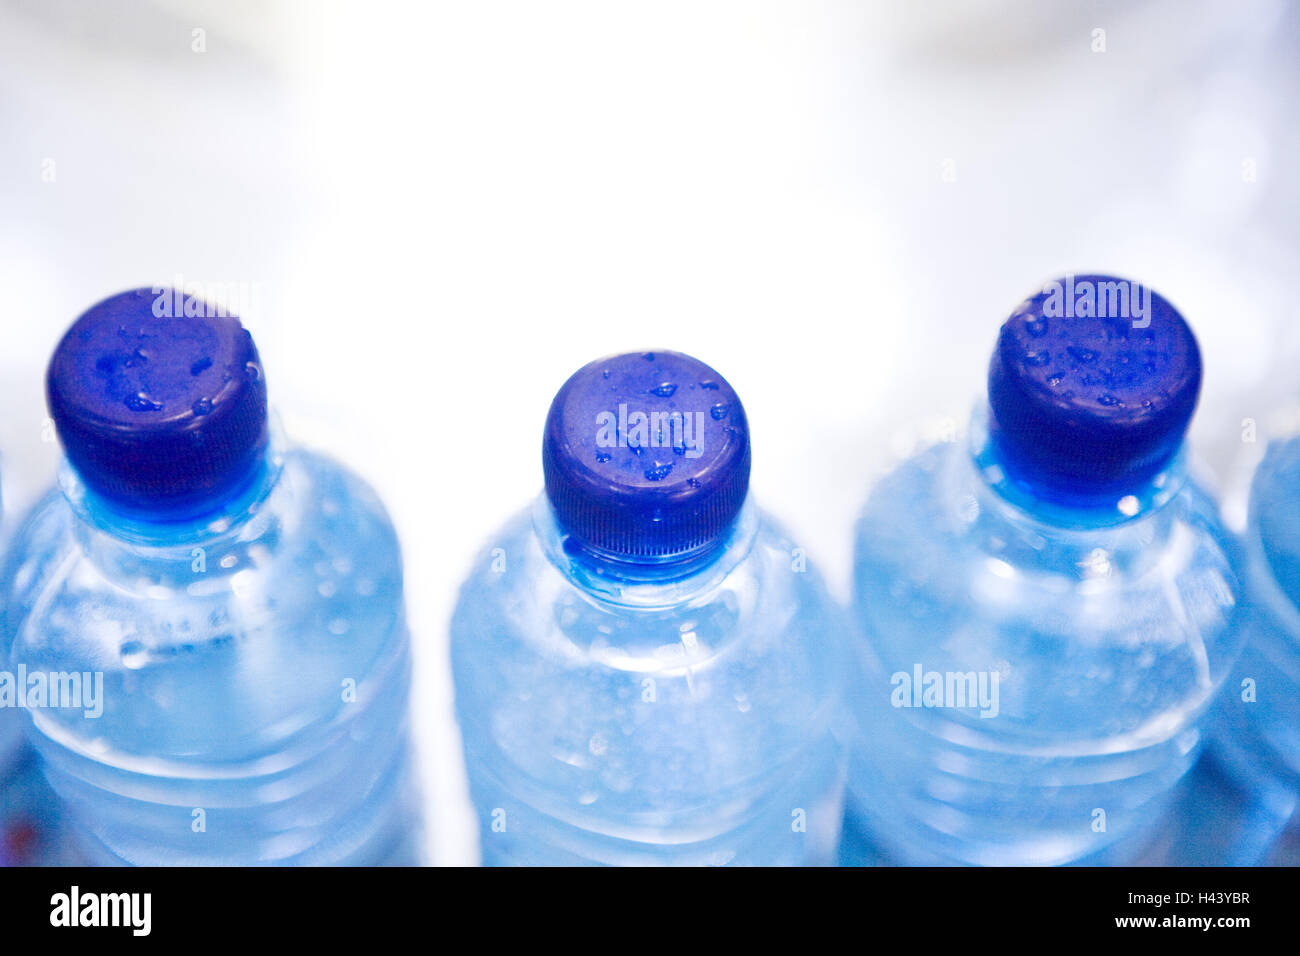 Agua mineral, botellas de plástico, sellos, detalle, desenfoque Foto de stock